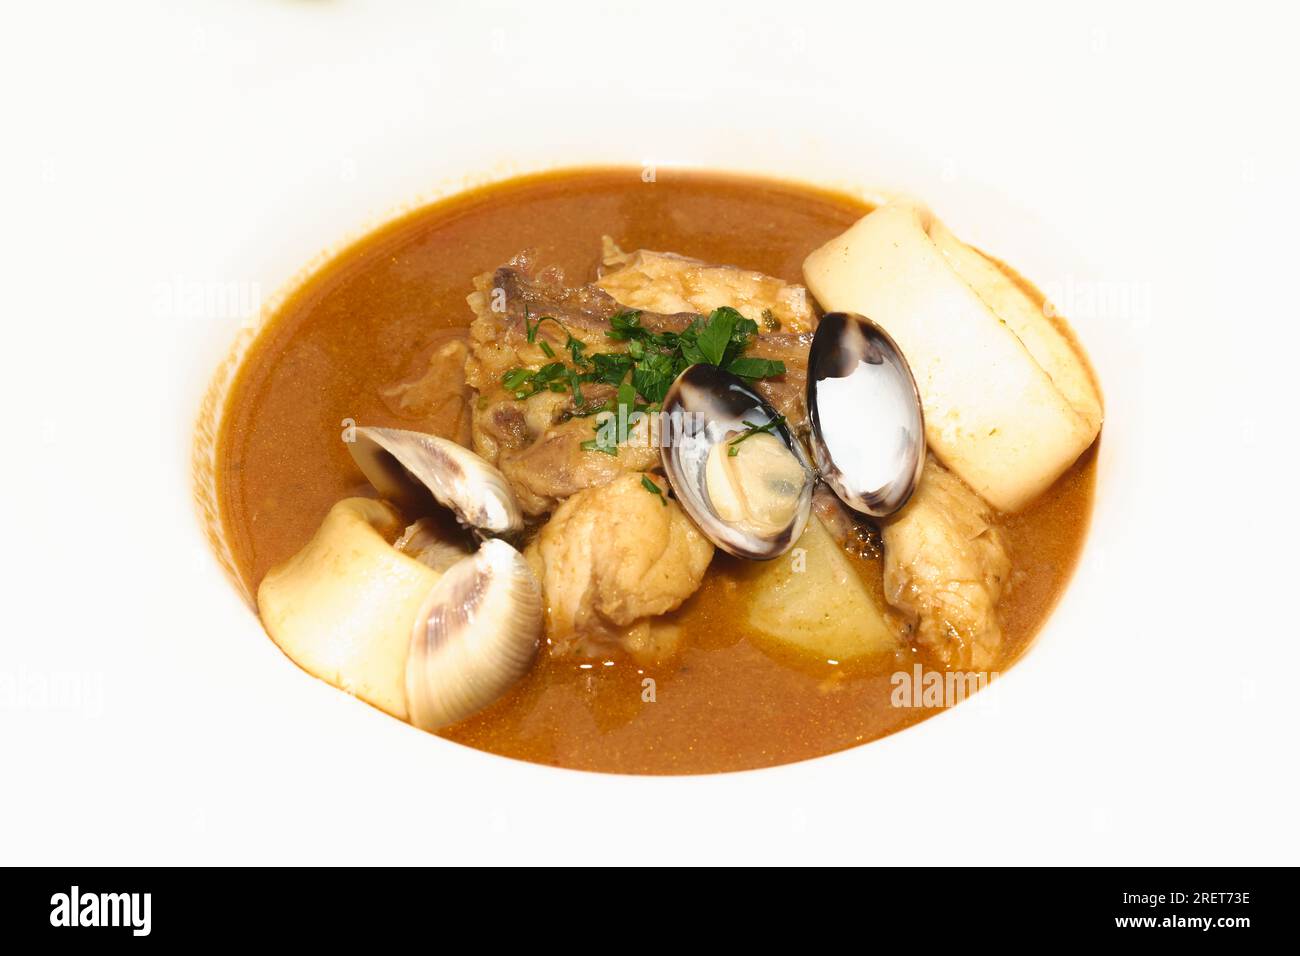 Meeresfrüchtesuppe aus der Nähe auf einem weißen Teller. Speisen- und Kochkonzept. Stockfoto